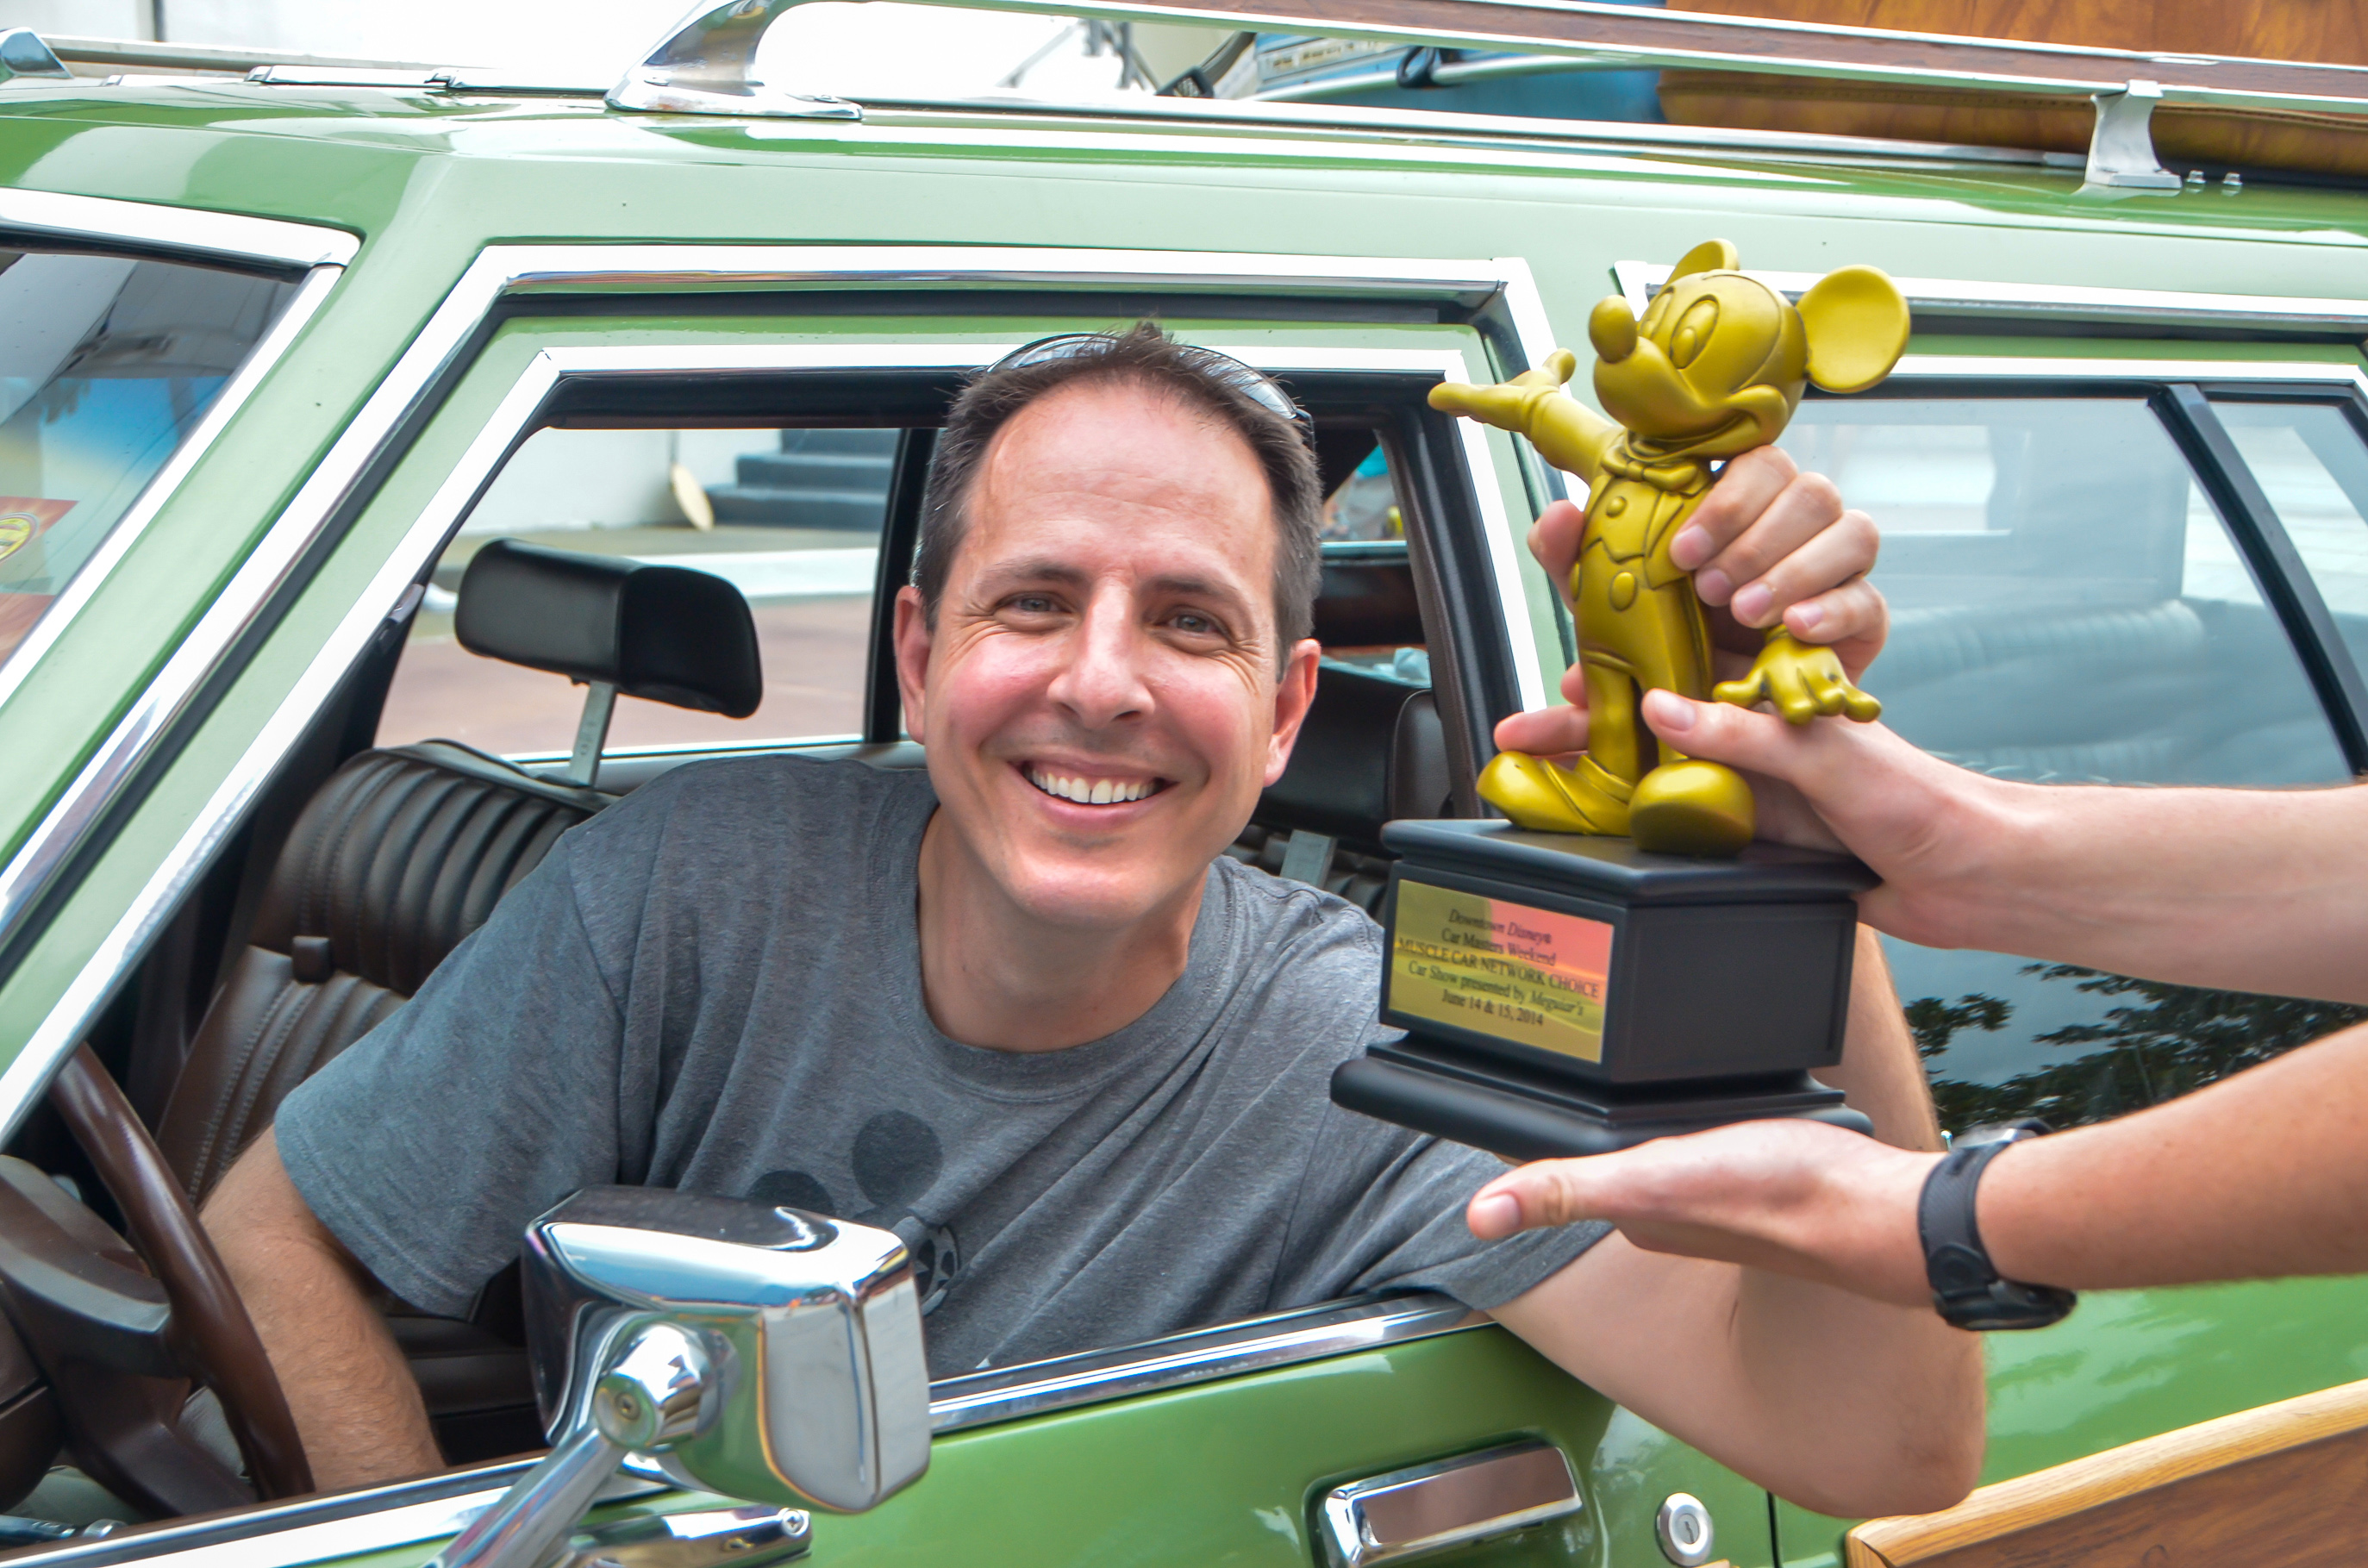 griswold-pixar-choice-carmasters-award